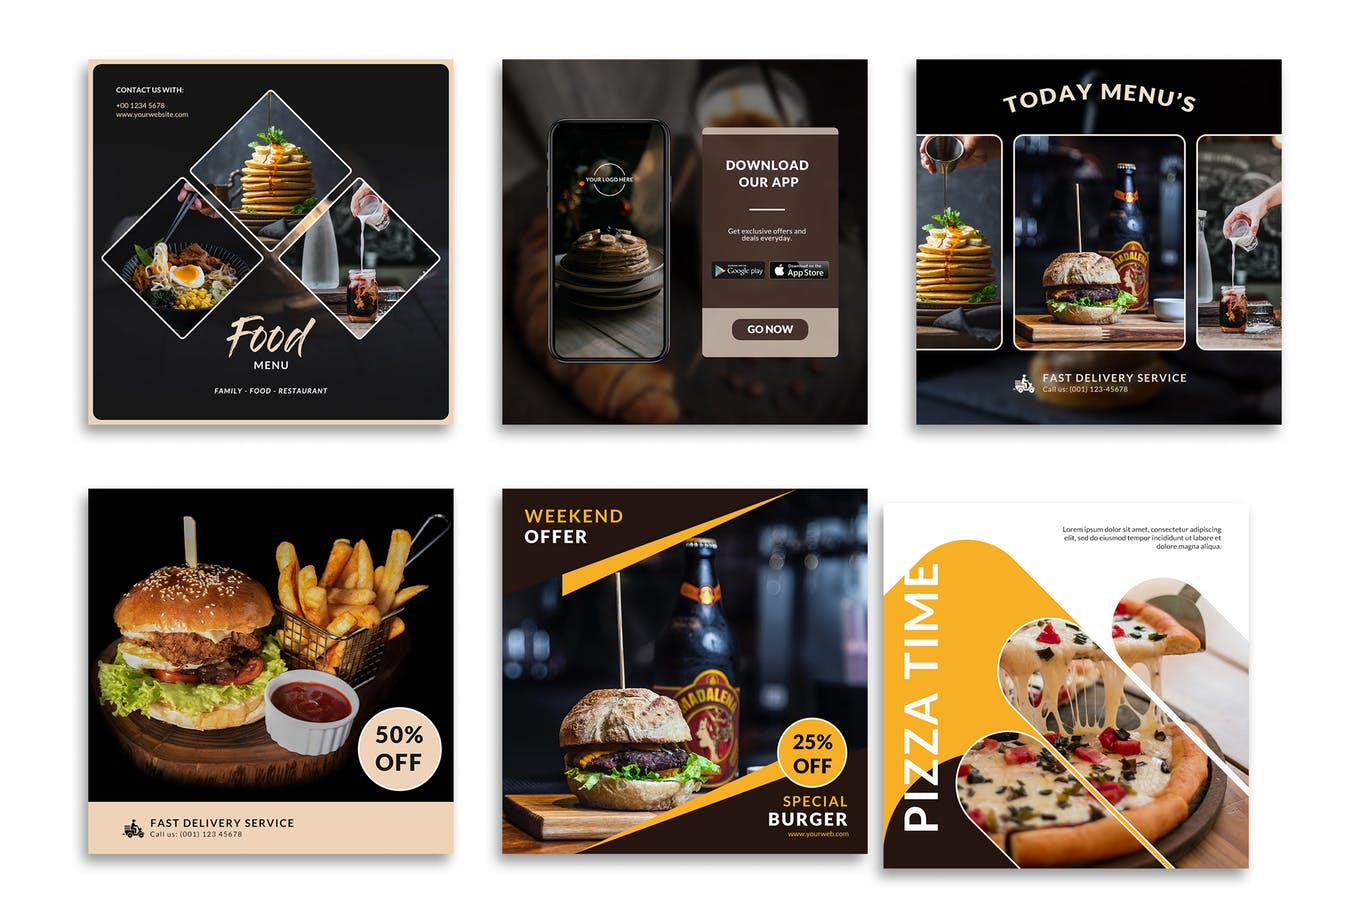 汉堡西餐厅食品大促销Instagram帖子设计模板 Food Instagram Posts Template设计素材模板